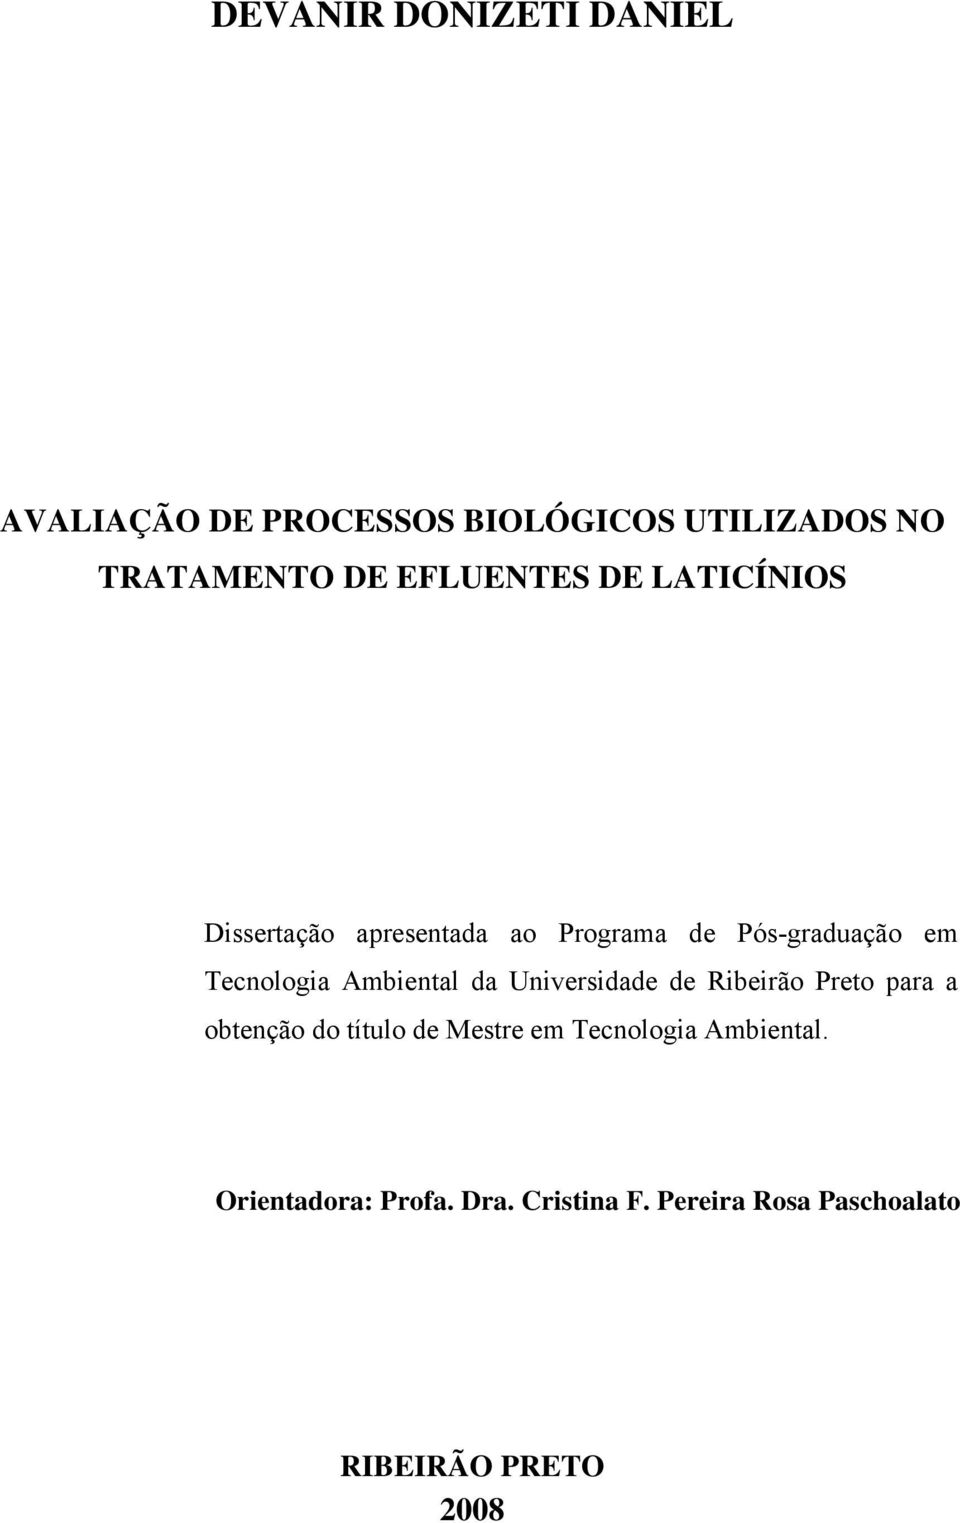 Ambiental da Universidade de Ribeirão Preto para a obtenção do título de Mestre em